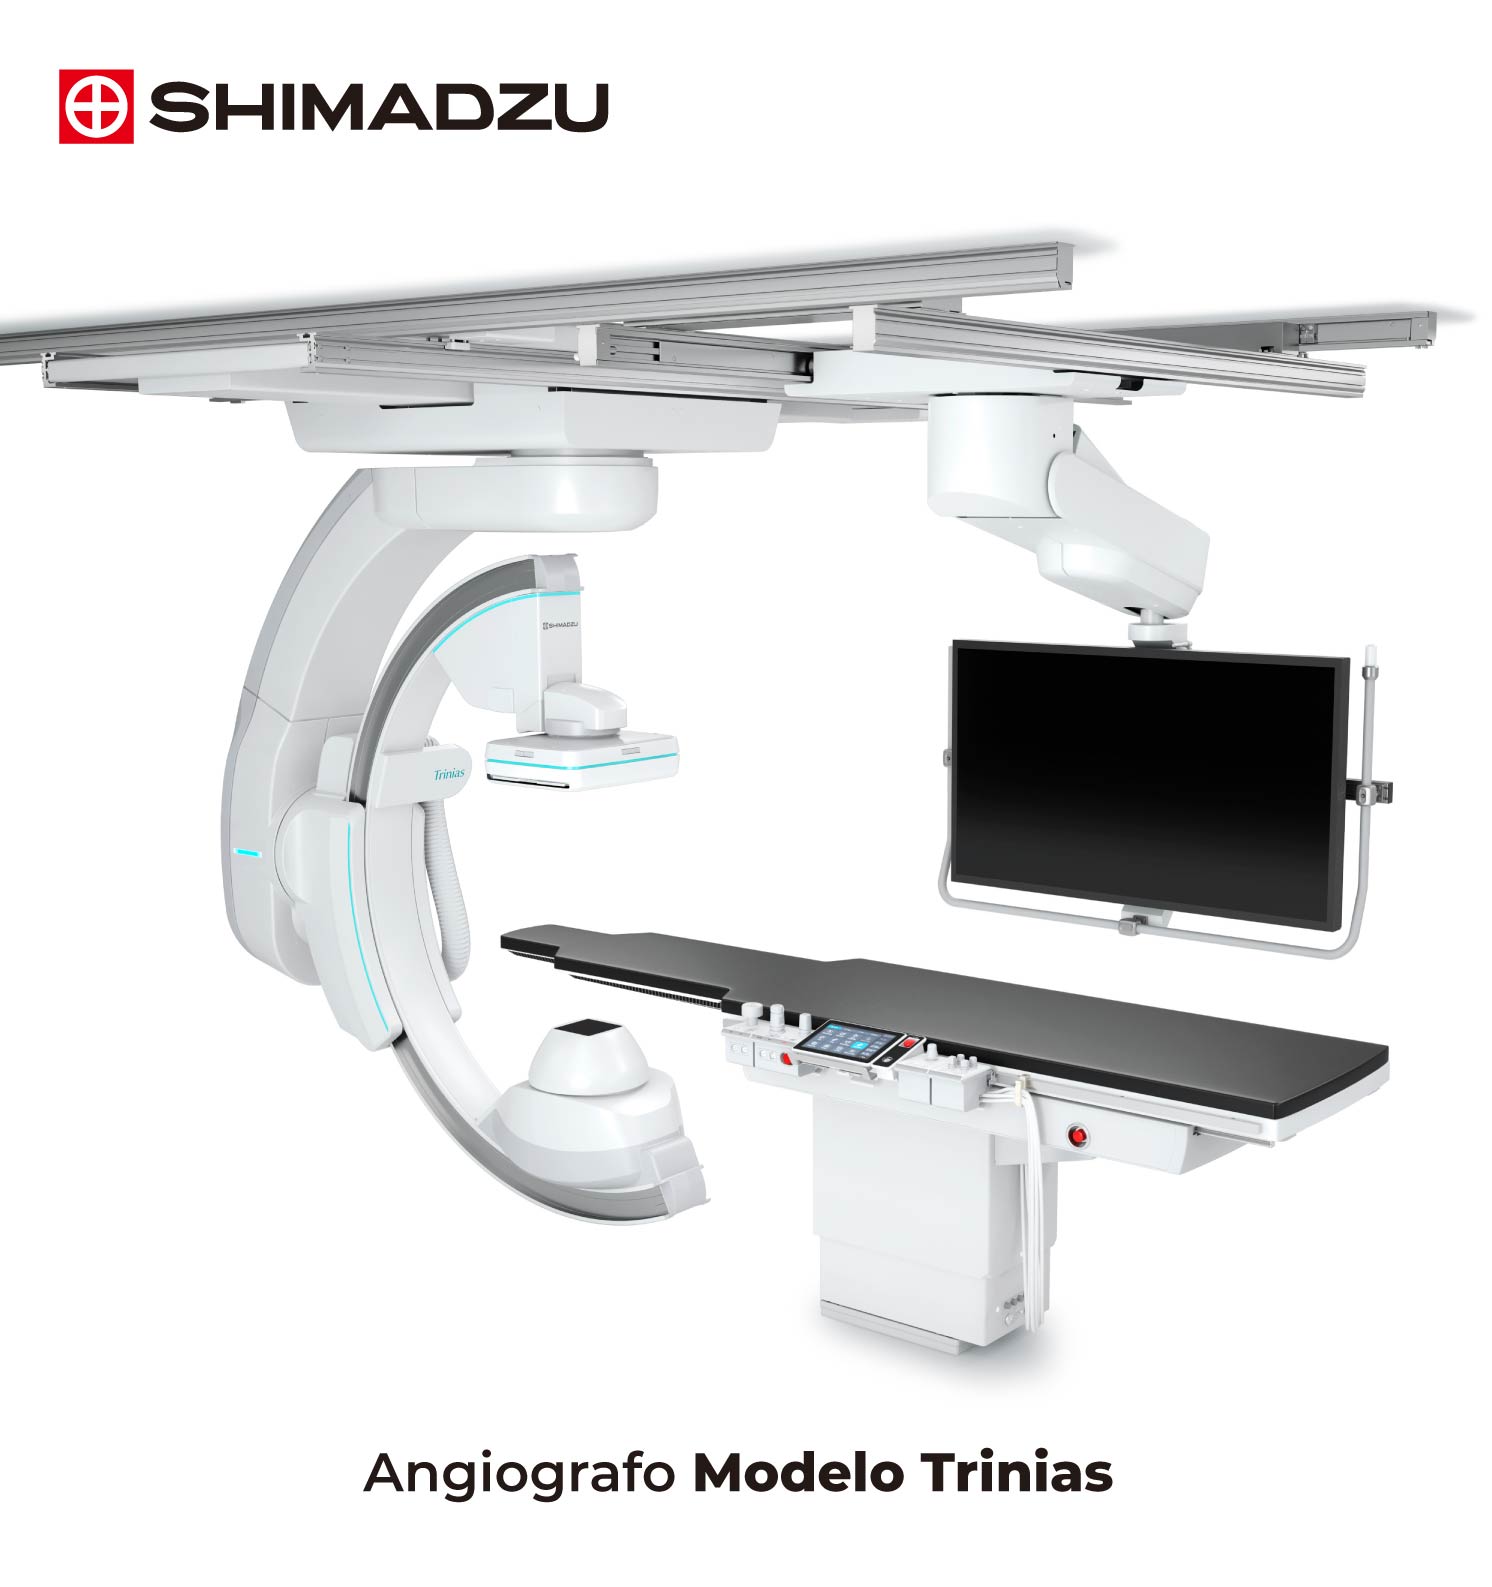 Angiografo Modelo Trinias